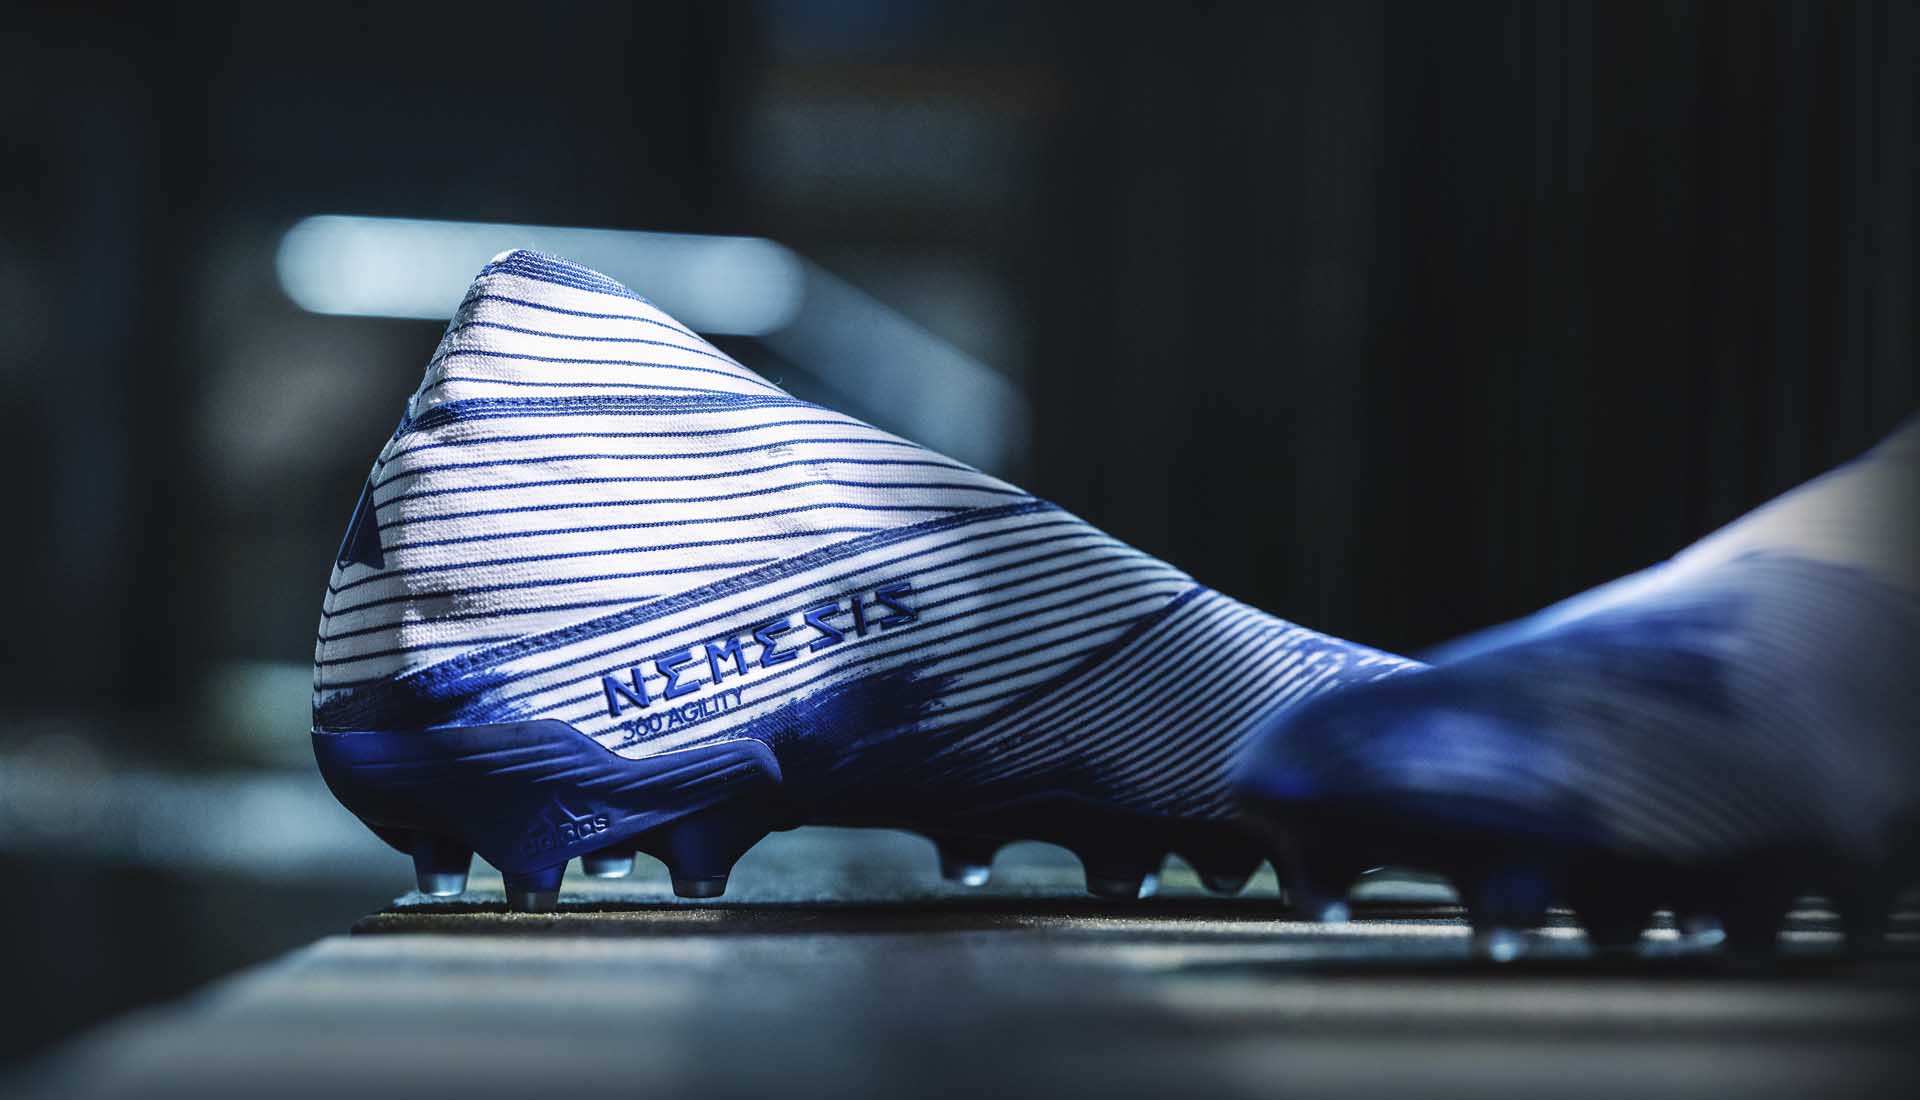 Adidas Nemeziz được làm bằng các sợi đai vải ôm chân